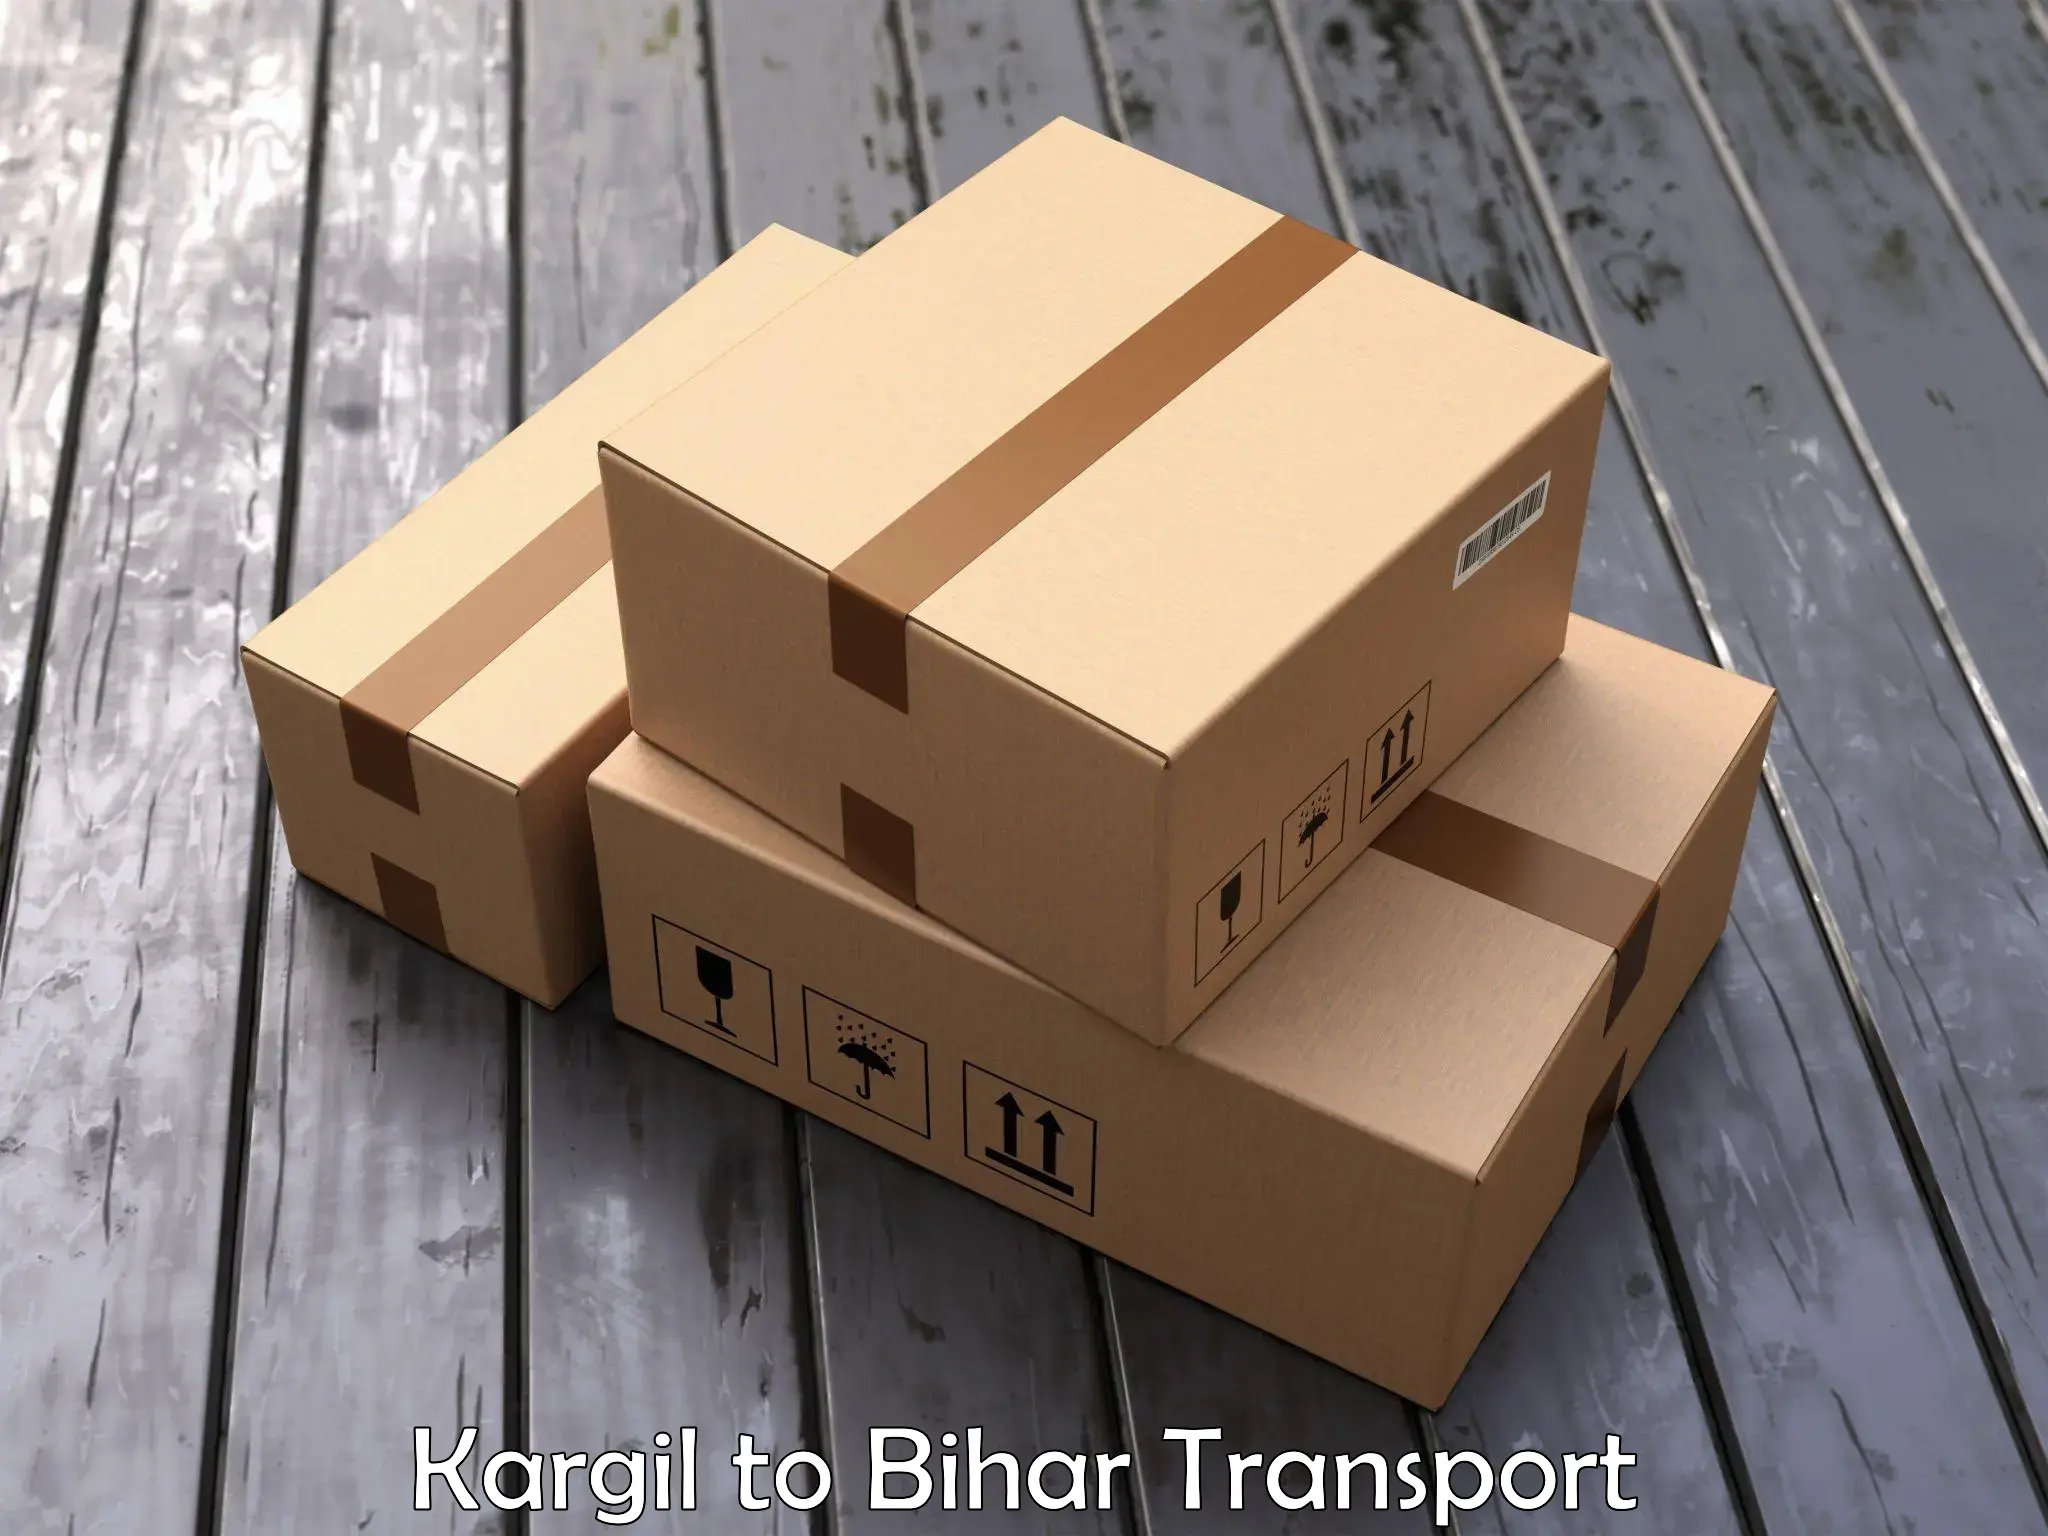 Air freight transport services Kargil to IIIT Bhagalpur